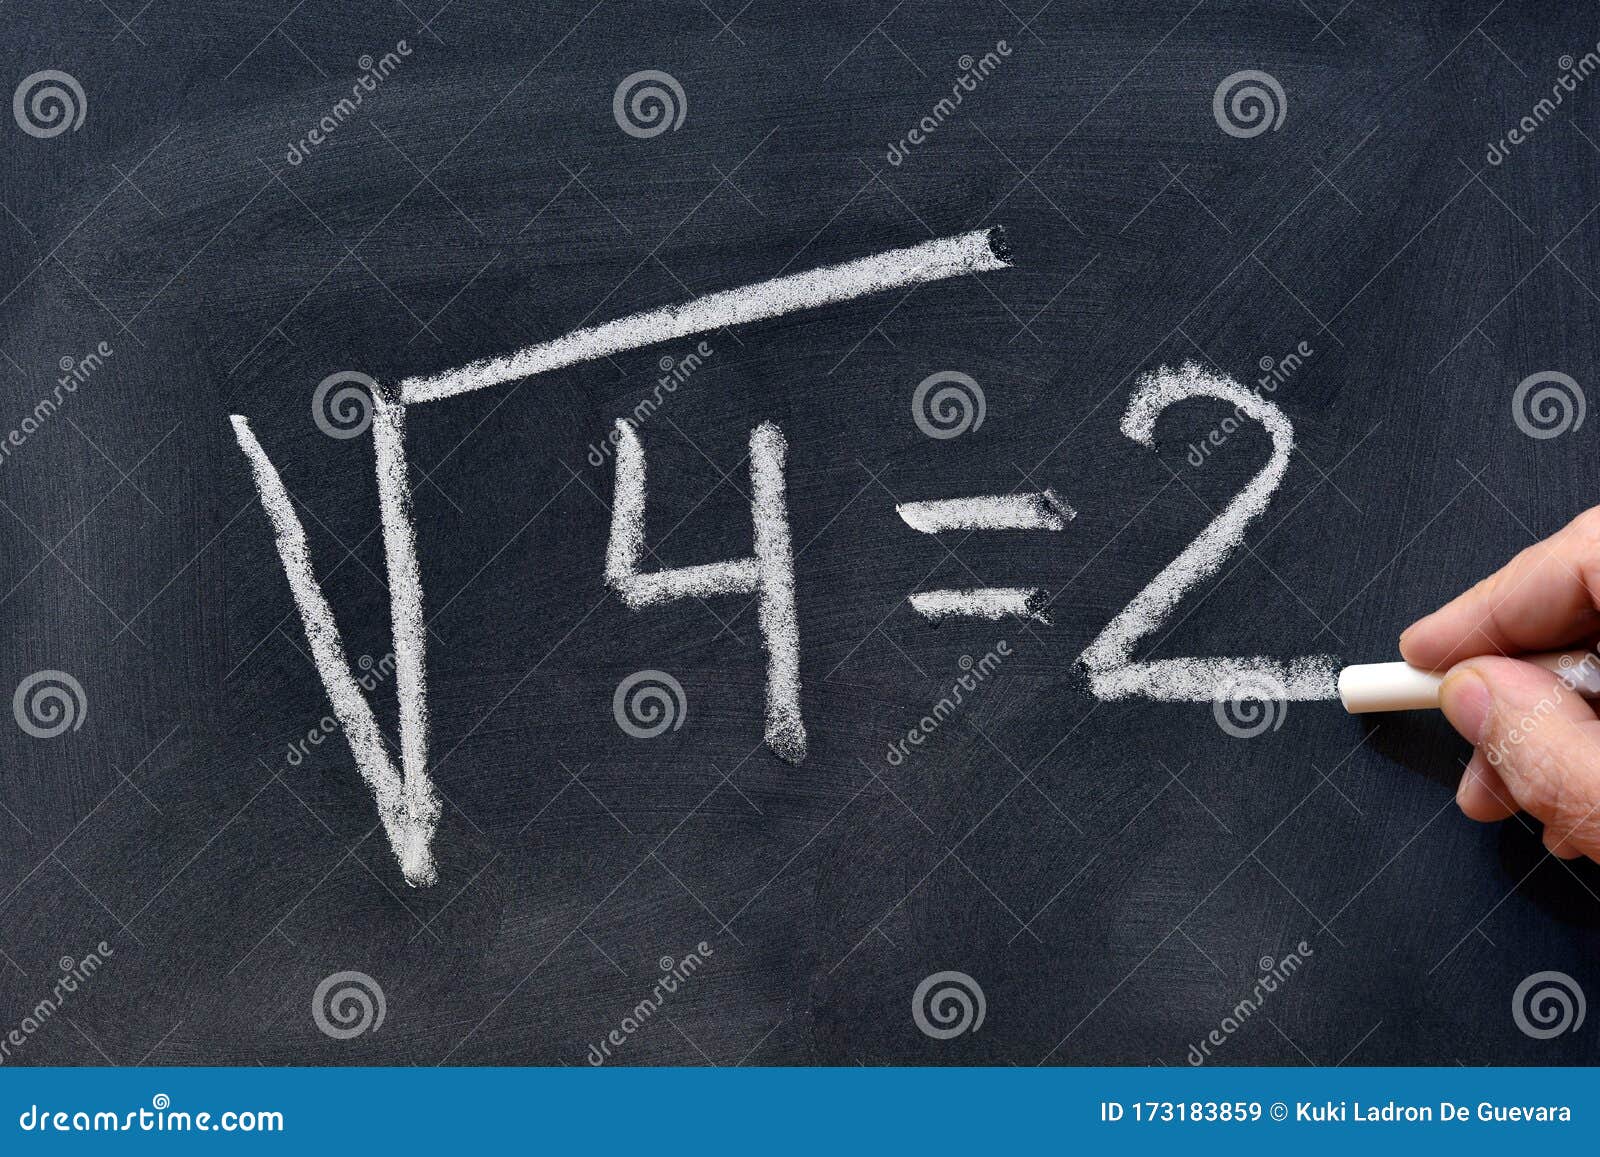 square root written on a blackboard